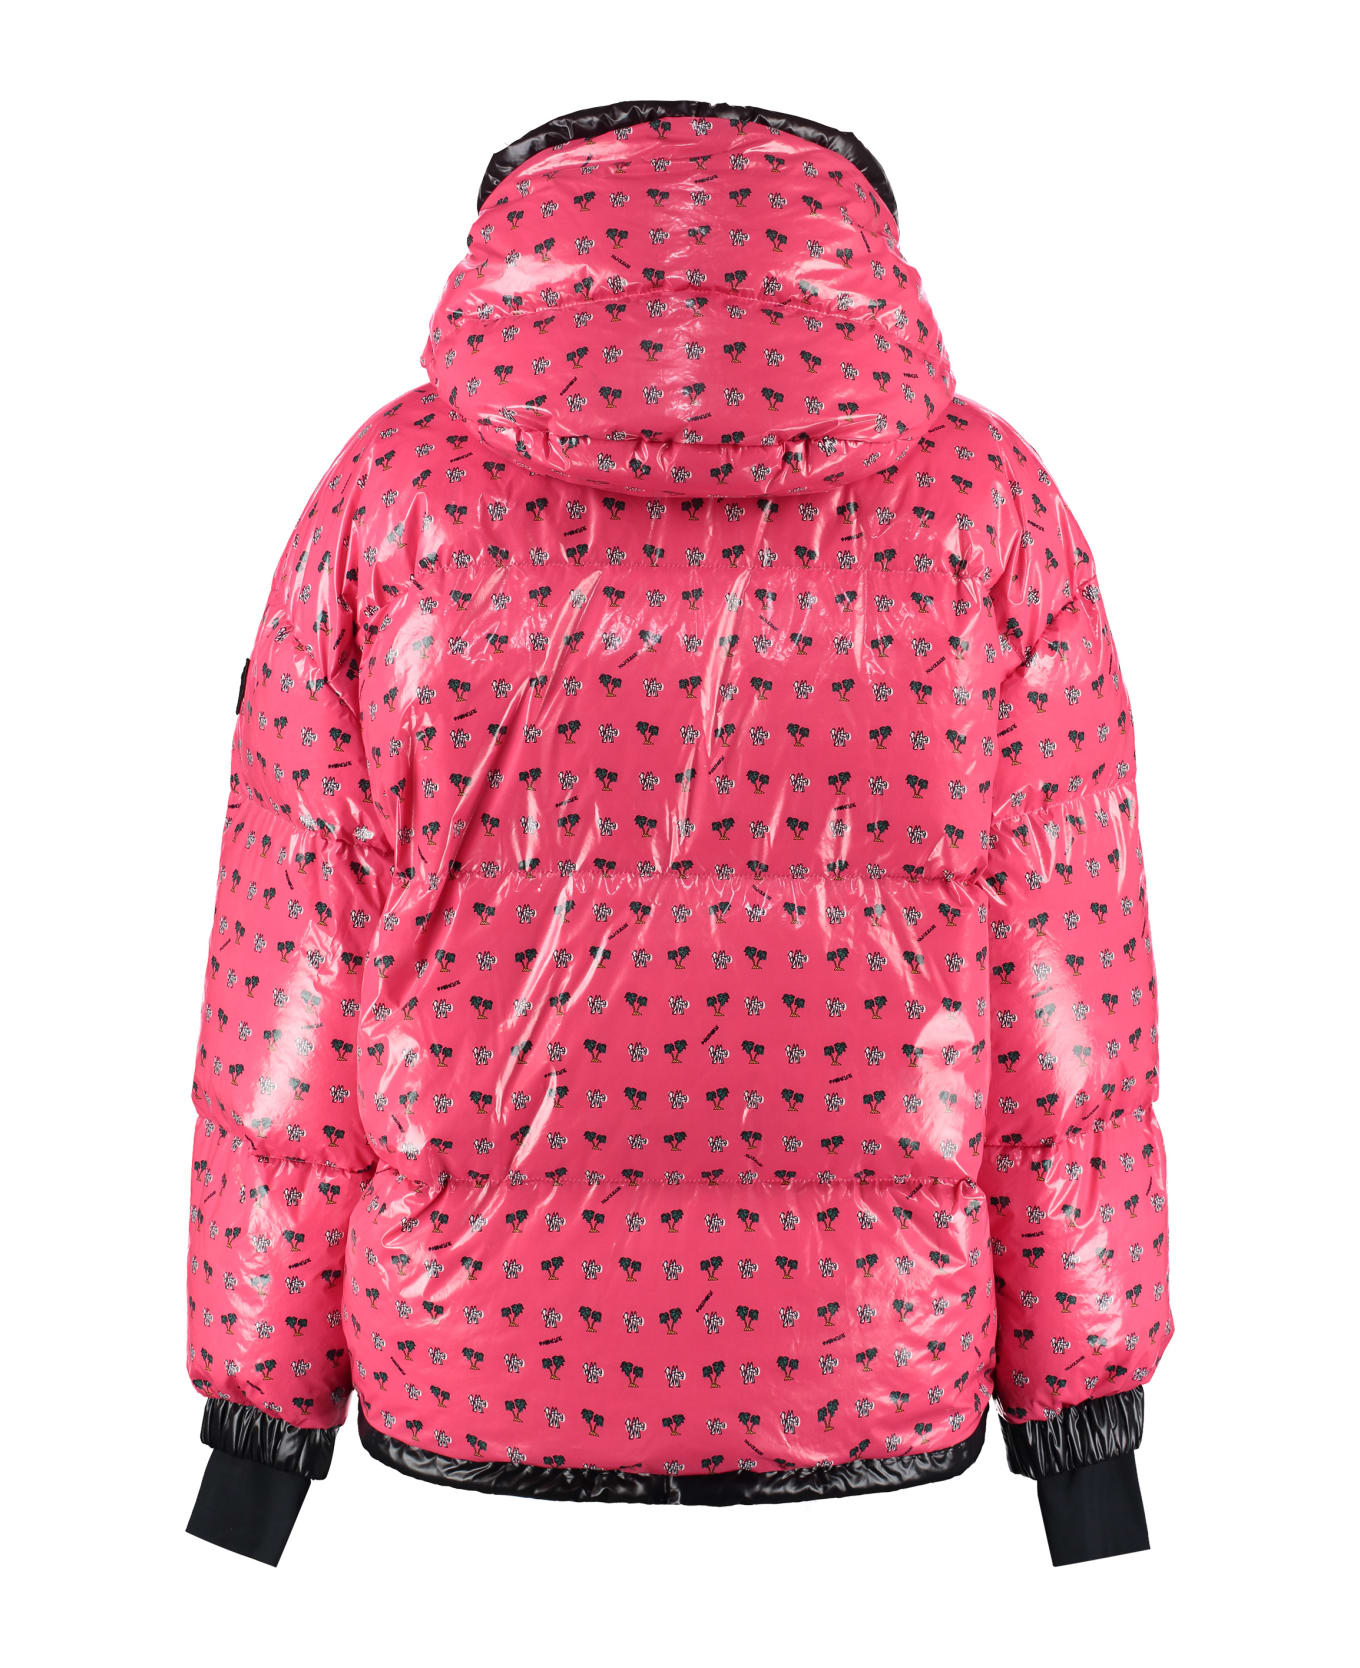 Moncler 3 Moncler Grenoble - Echelle Hooded Nylon Down Jacket - Pink